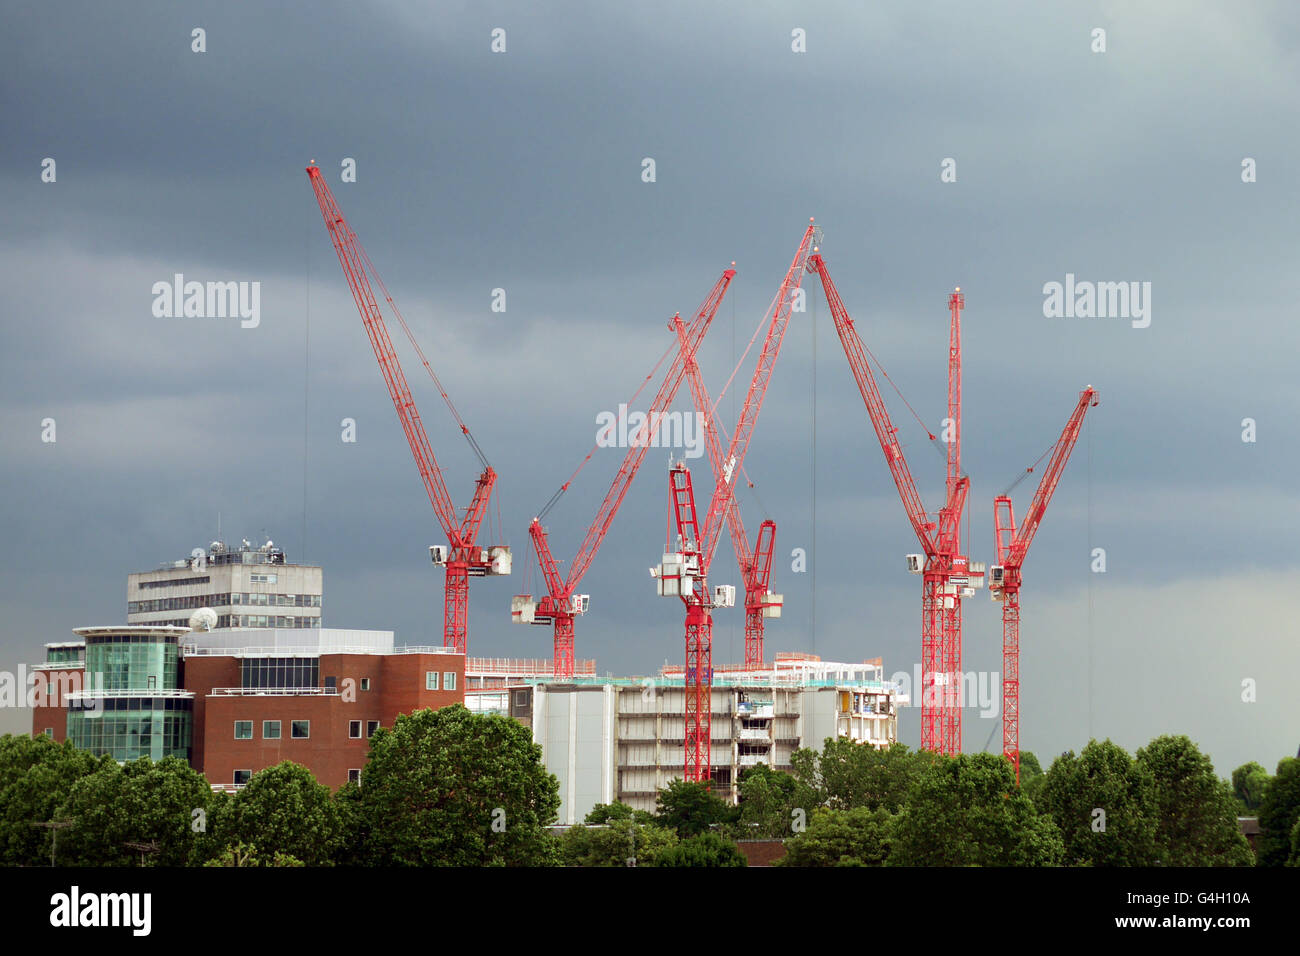 Les travaux de construction sur le site de l'ancien Centre de Télévision de la BBC à White City dans l'ouest de Londres, Angleterre, Royaume-Uni, le 18 juin 2016. Banque D'Images